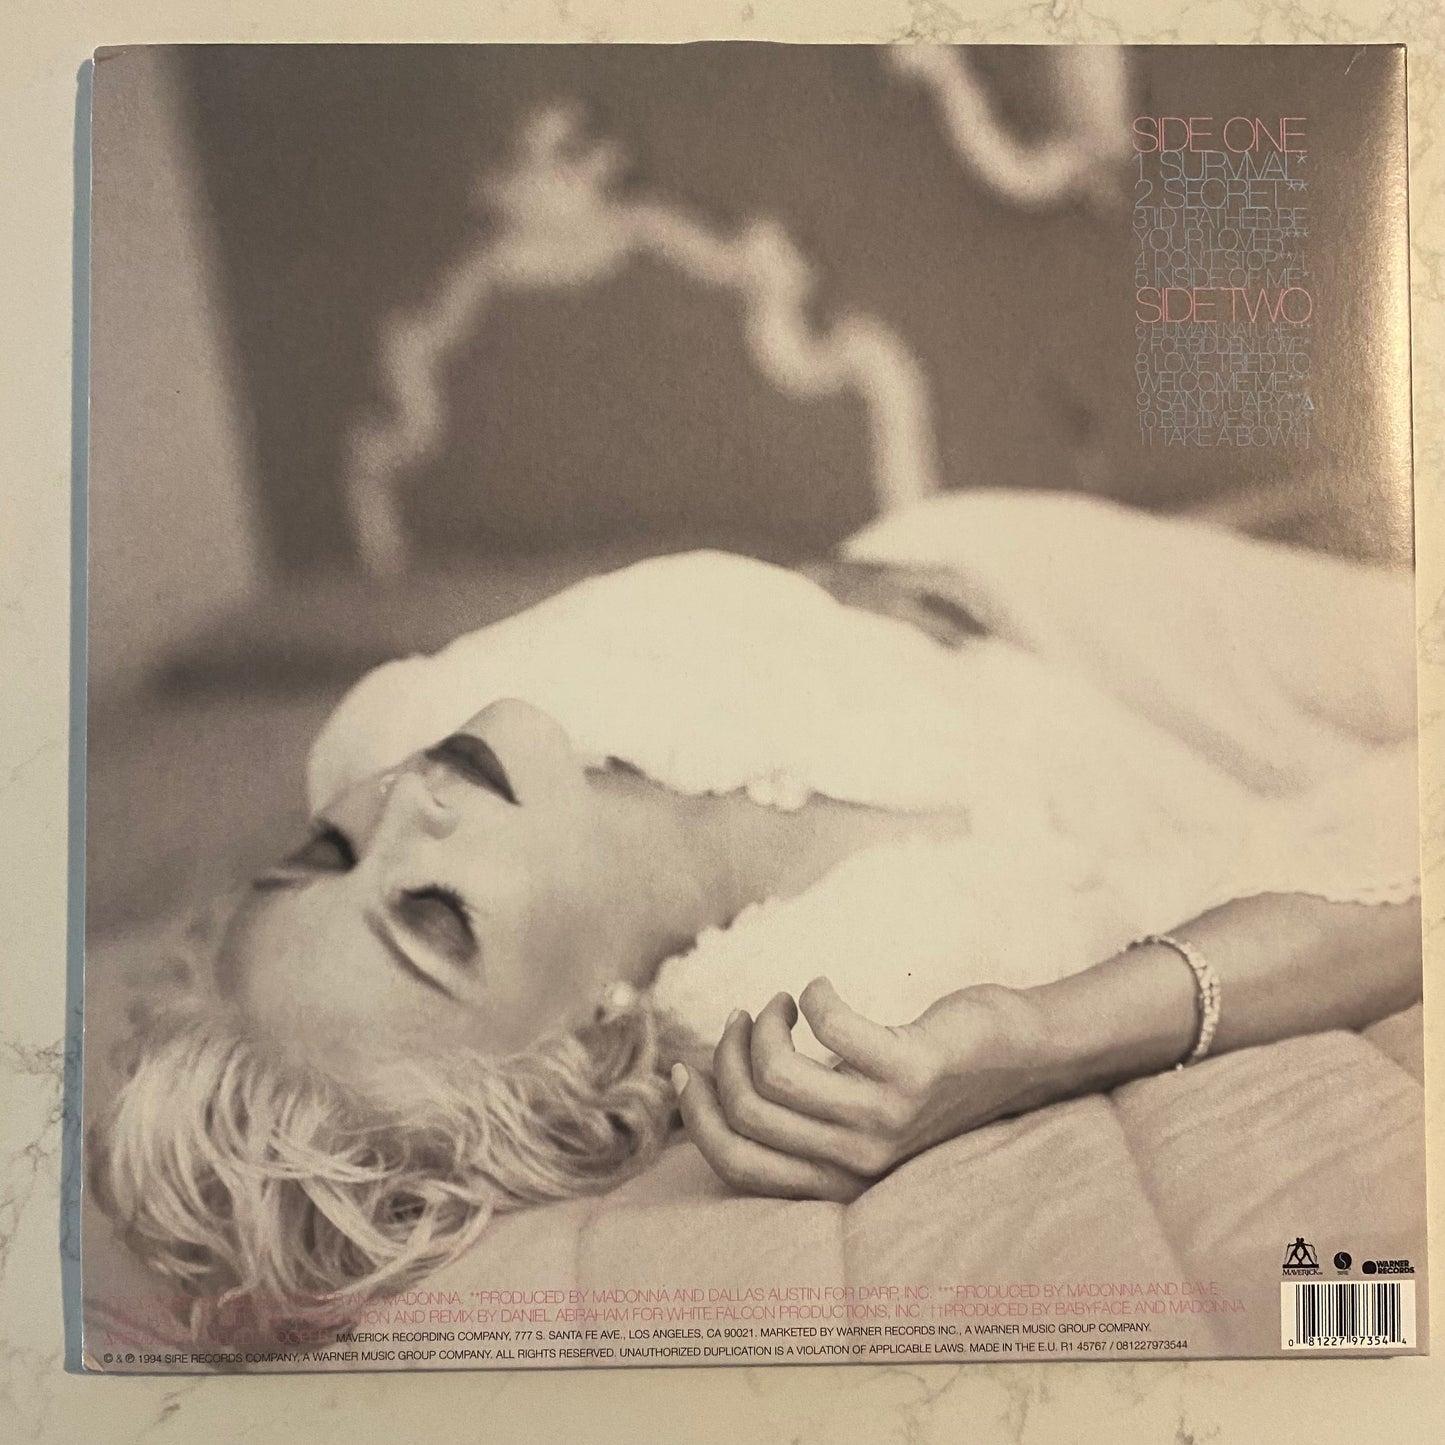 Madonna - Bedtime Stories (LP, Album, RE, 180) (L)